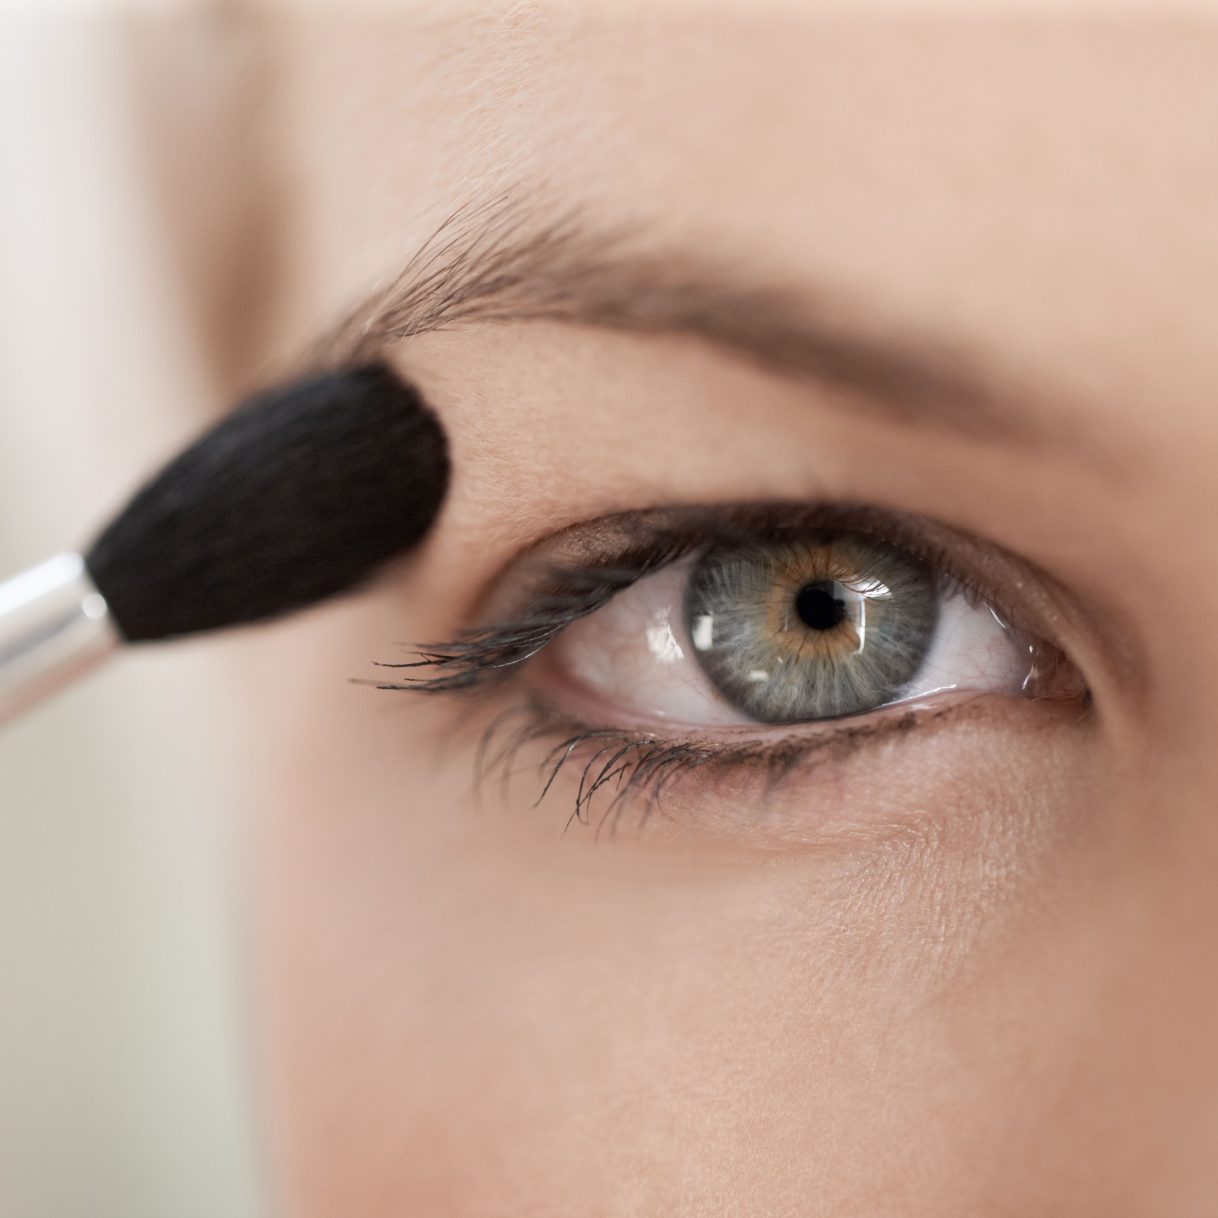 Natural Makeup Look For Green Eyes Makeup Tricks For Hooded Eyes Hooded Eyes Makeup Tips And Tricks